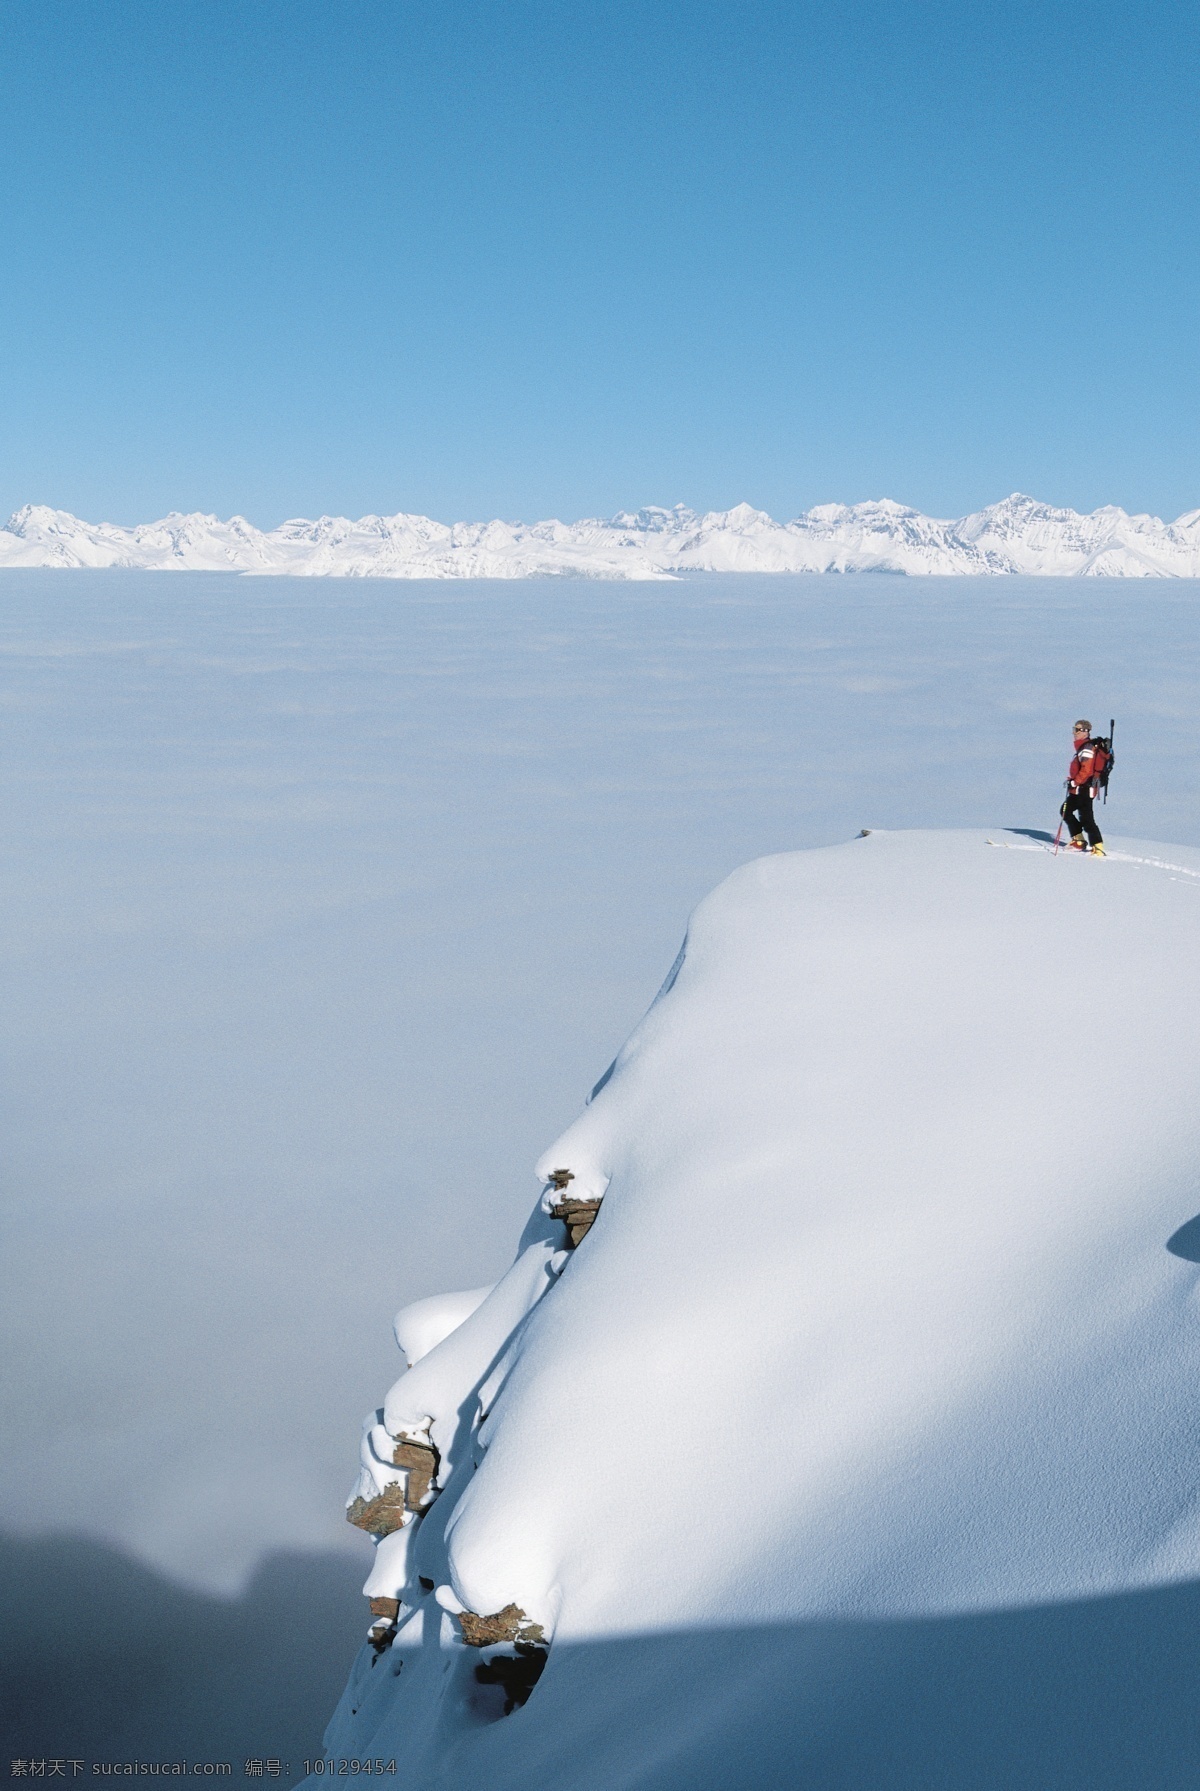 雪山 上 登山 运动员 雪地运动 登山运动员 爬山 运动图片 生活百科 风景 摄影图片 高清图片 体育运动